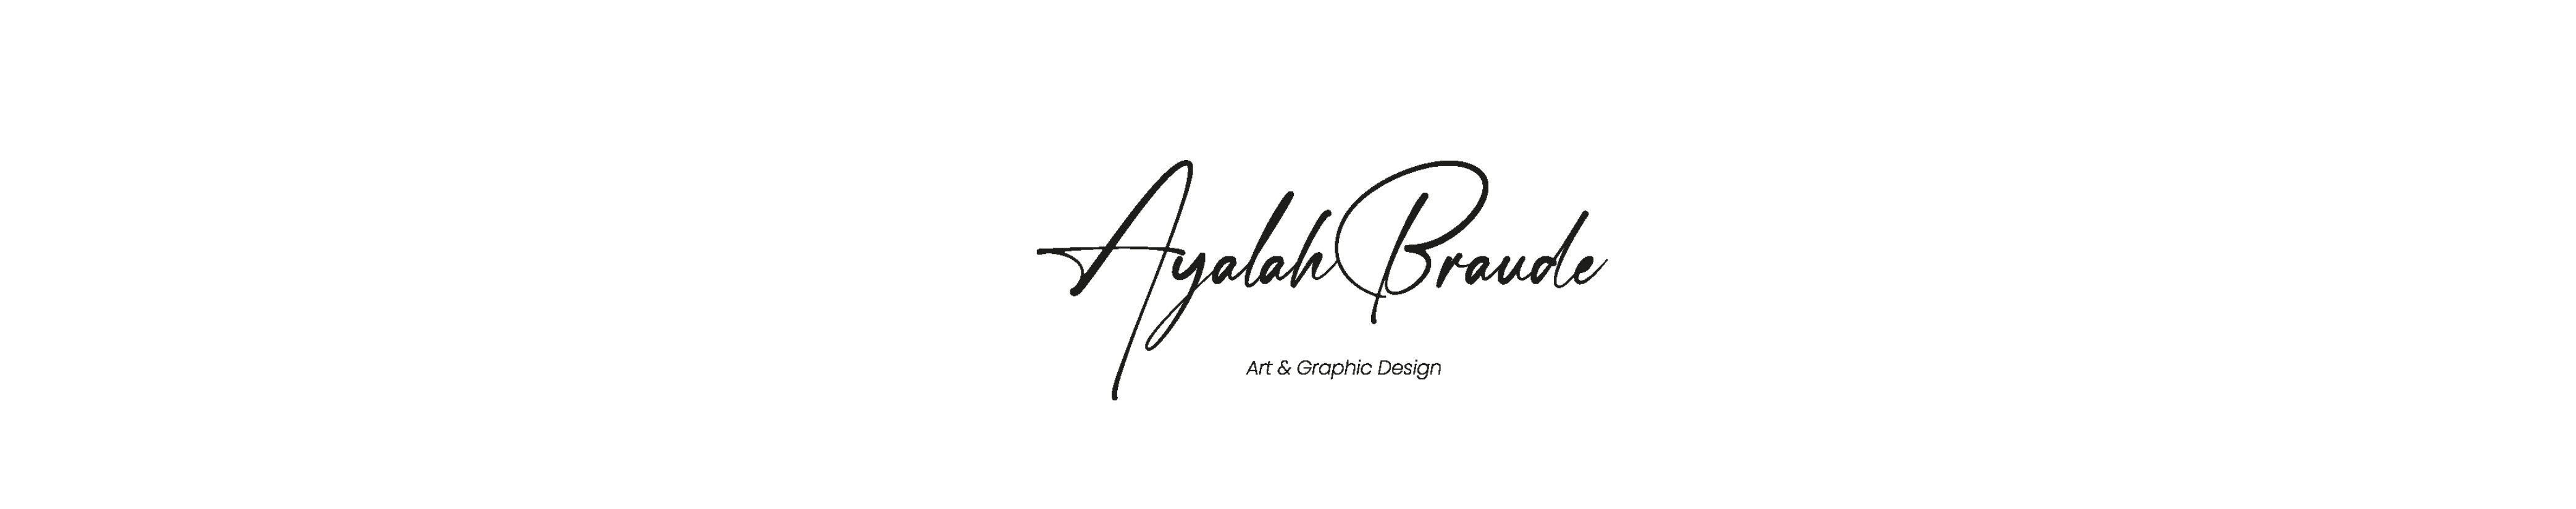 Profil-Banner von Ayalah Braude